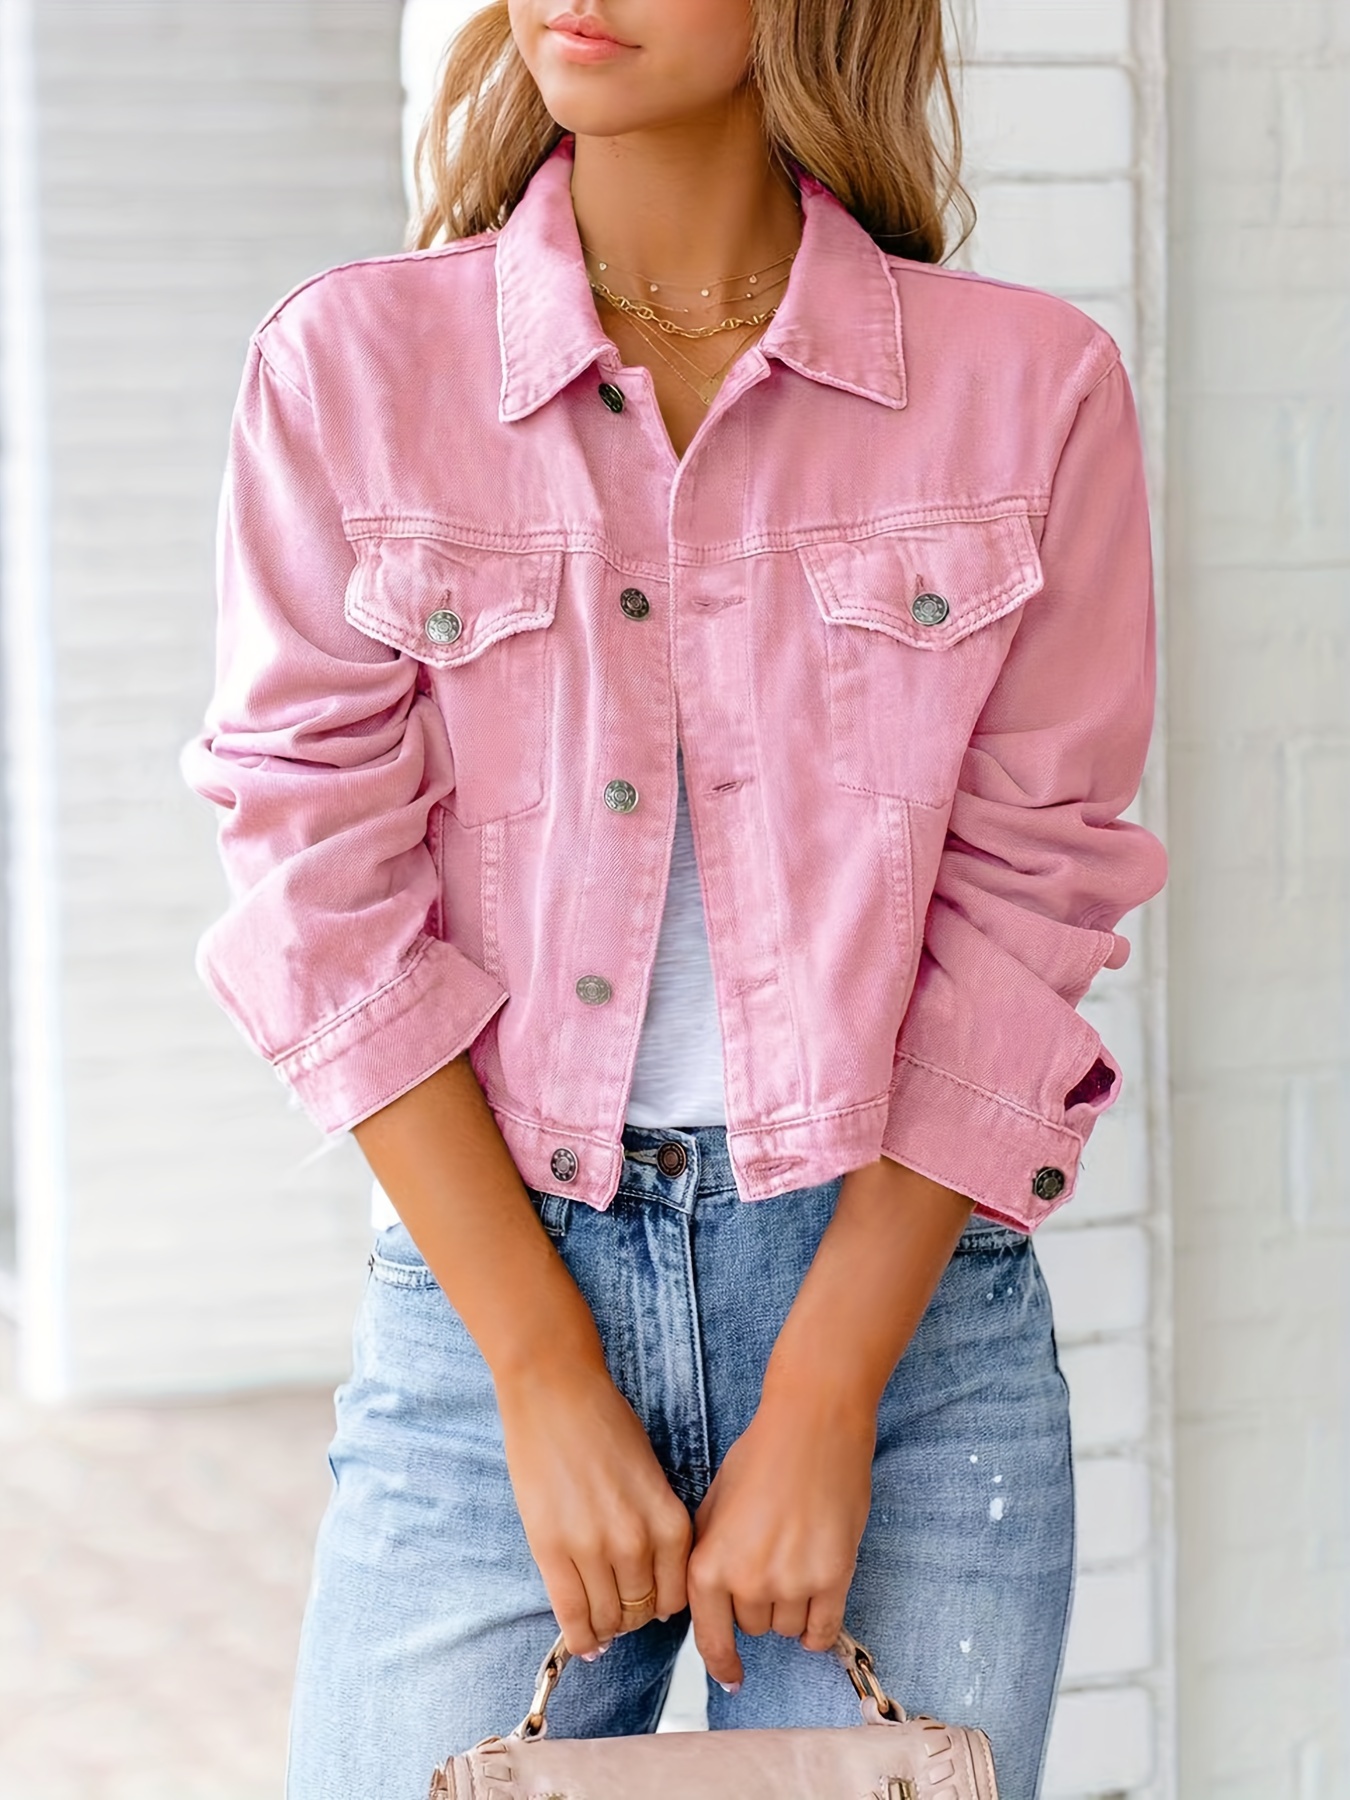 Women's Pink Denim Jackets